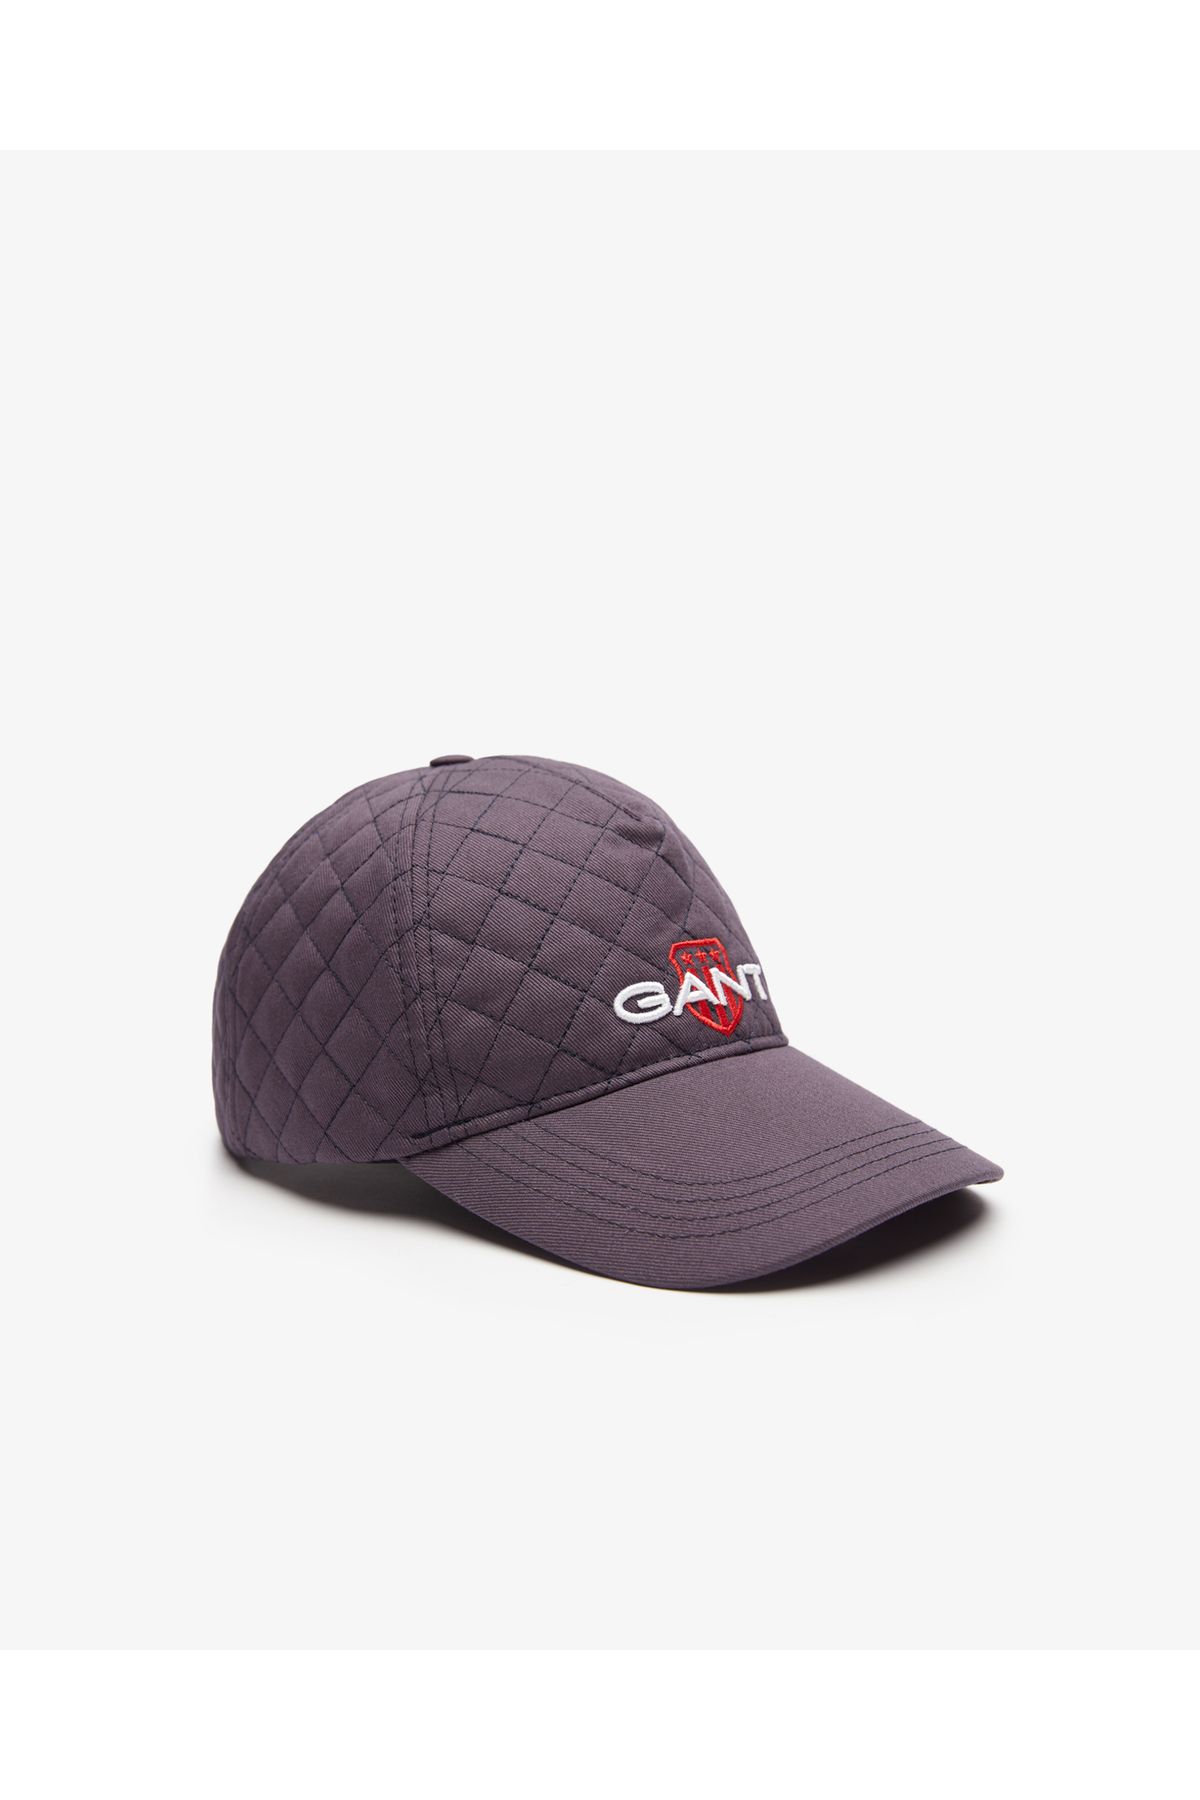 Gant Unisex Mor Şapka